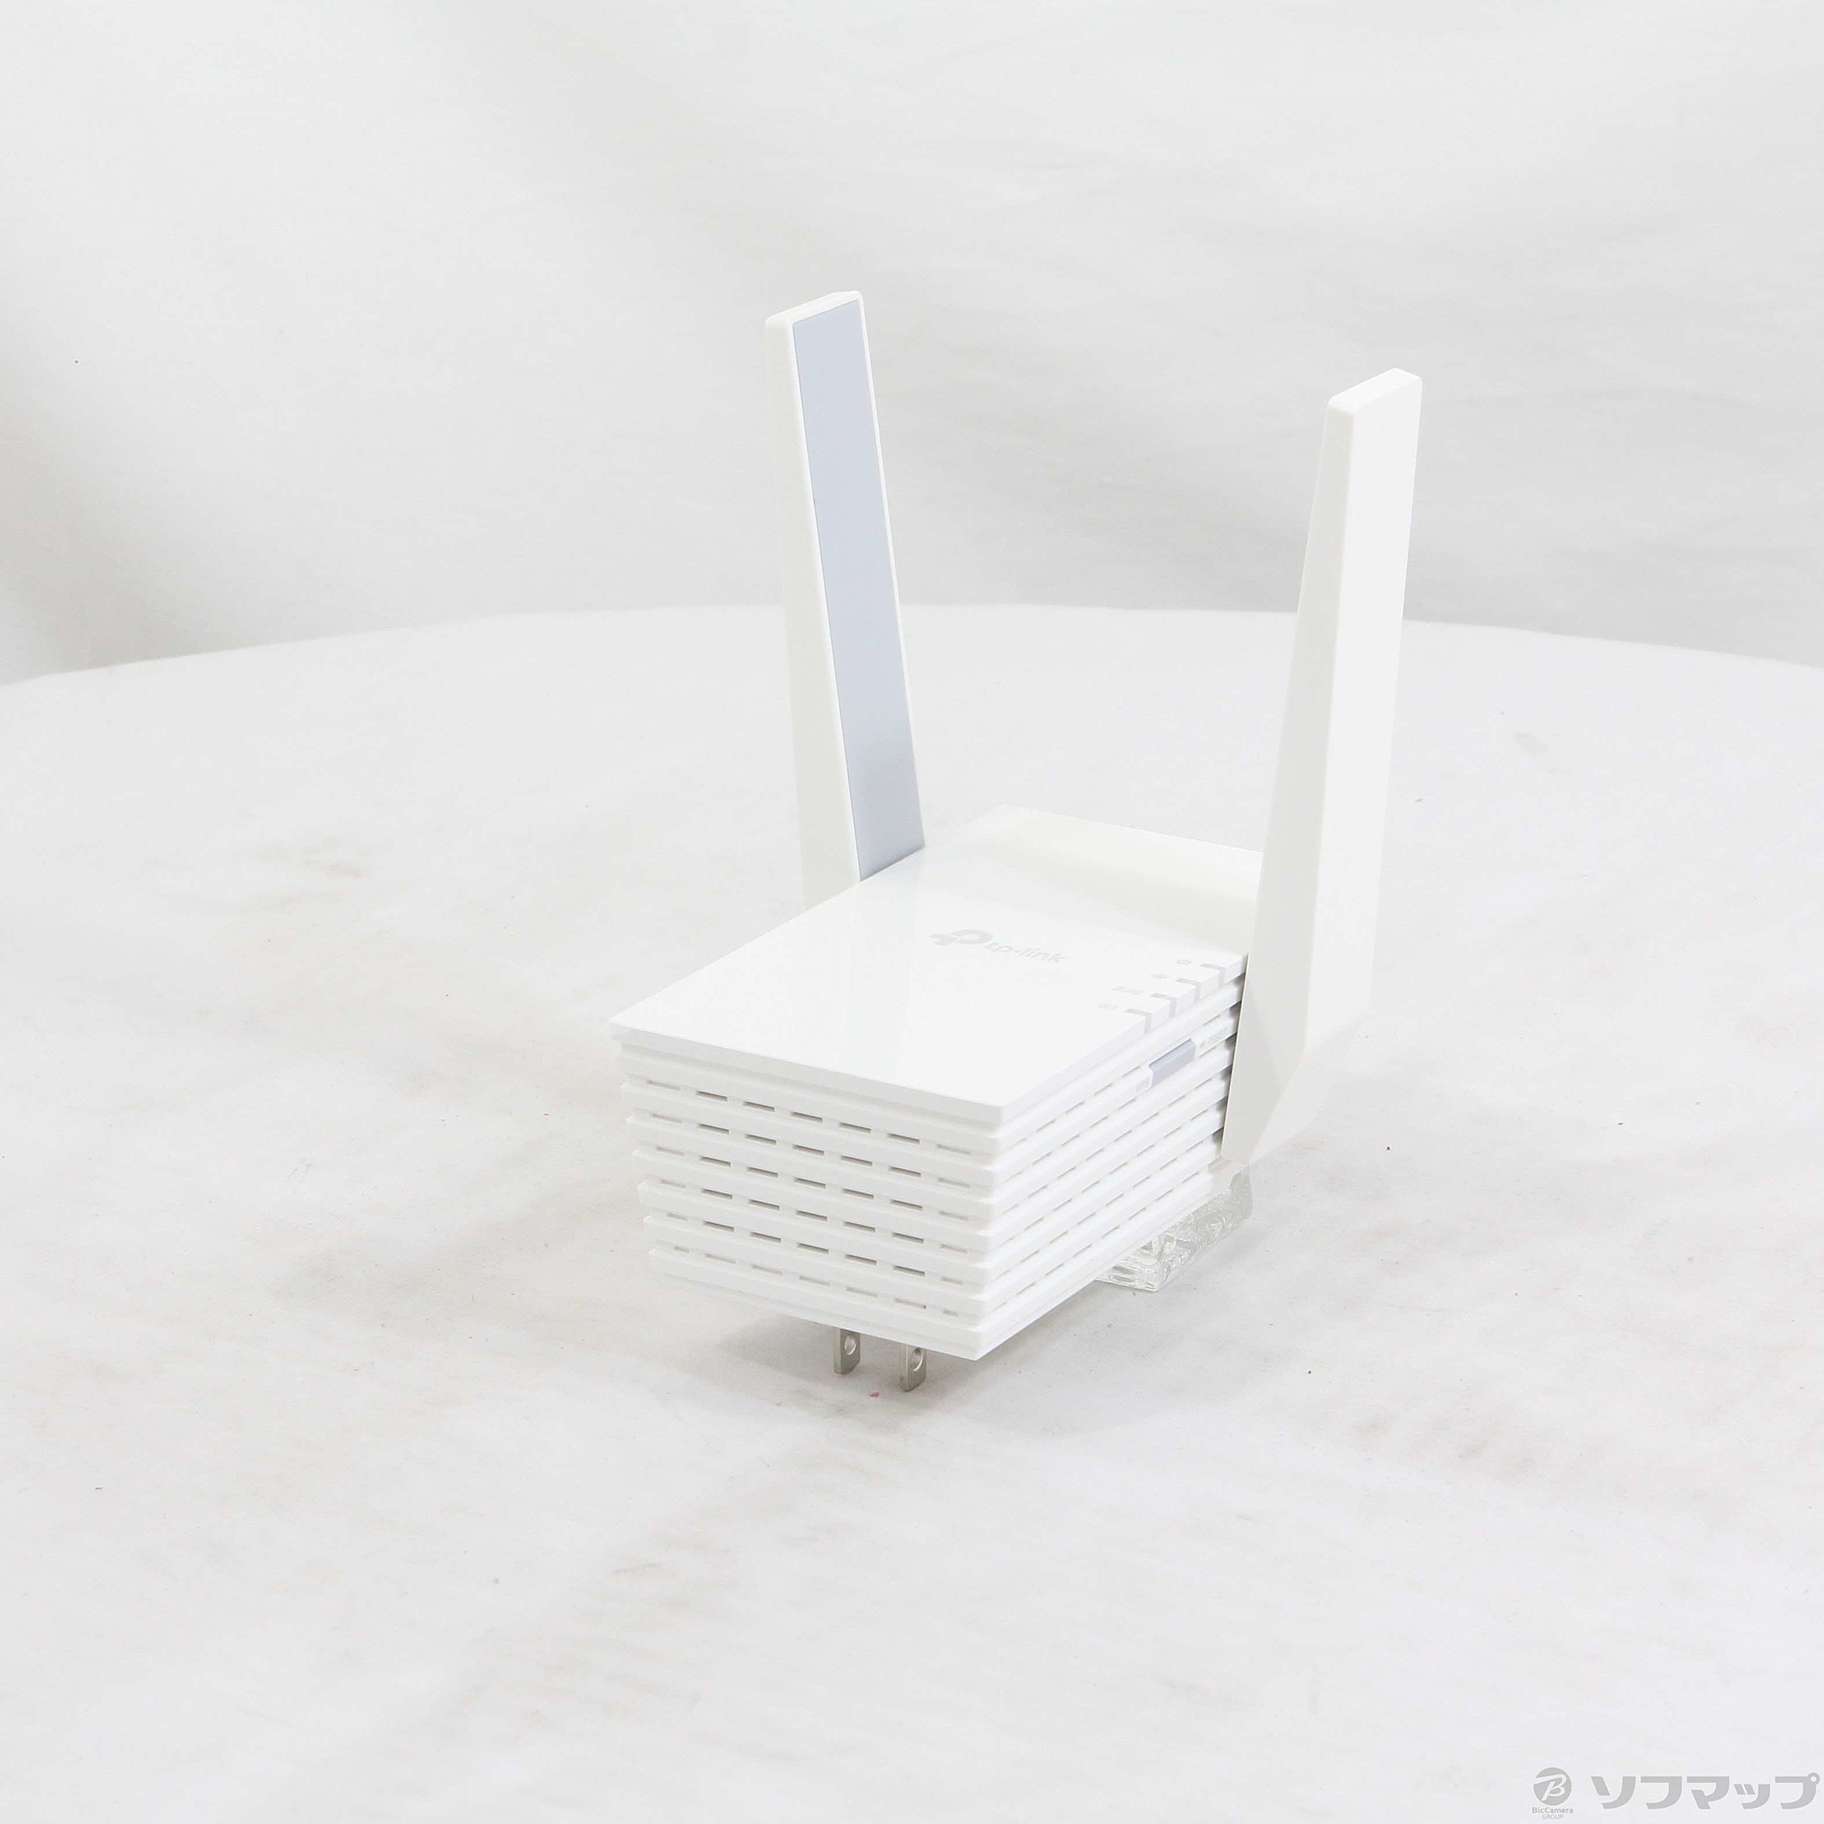 RE605X | AX1800 Wi-Fi 6中継機